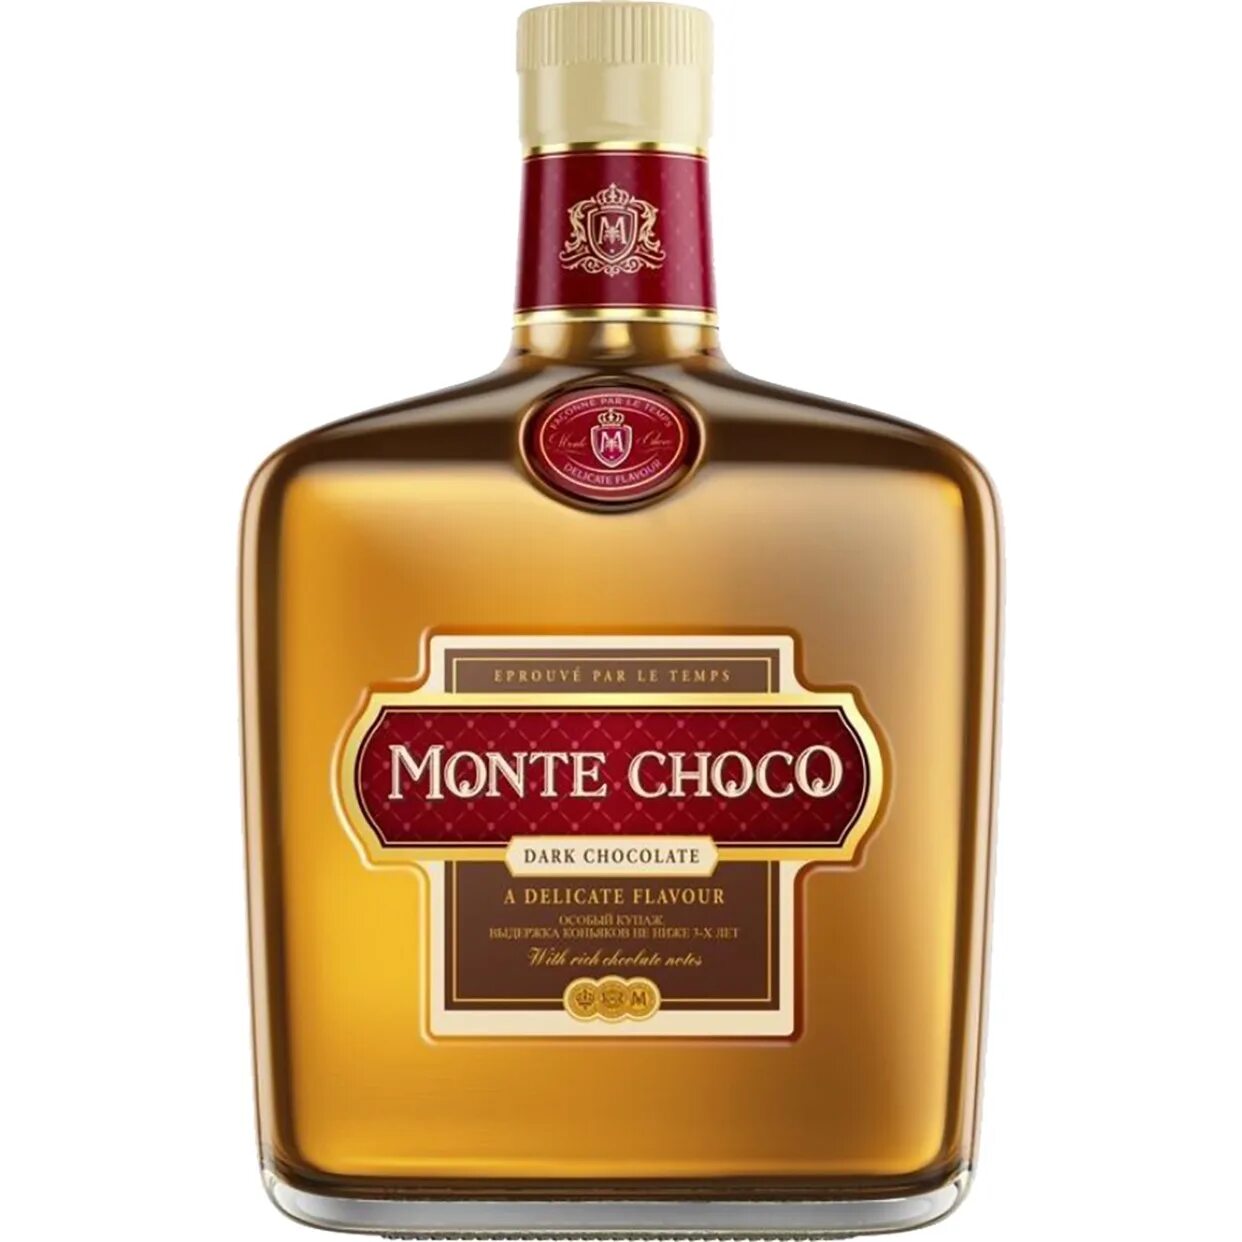 Коктейль choco. Коньяк Monte Choco 0.5. Коктейль коньячный Монте шоко. Монте Чоко дарк шоколад. Коньяк Монте Чоко шоколад.